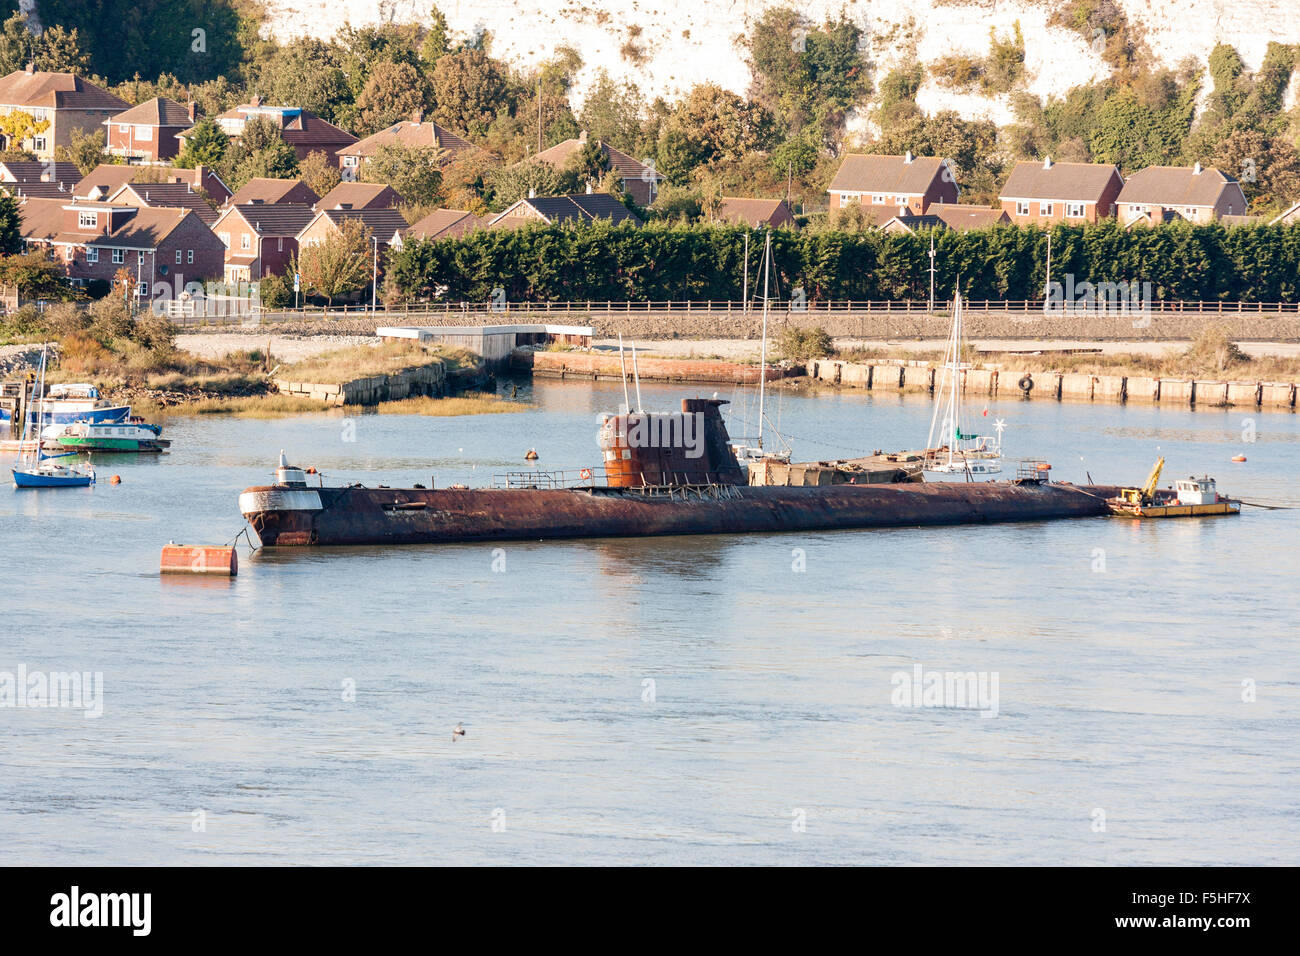 Rochester. Arrugginimento sottomarino russo, U-475 Black Widow, un progetto sovietico 641 classe o nome della NATO, Foxtrot, ormeggiata nel fiume Medway. Foto Stock